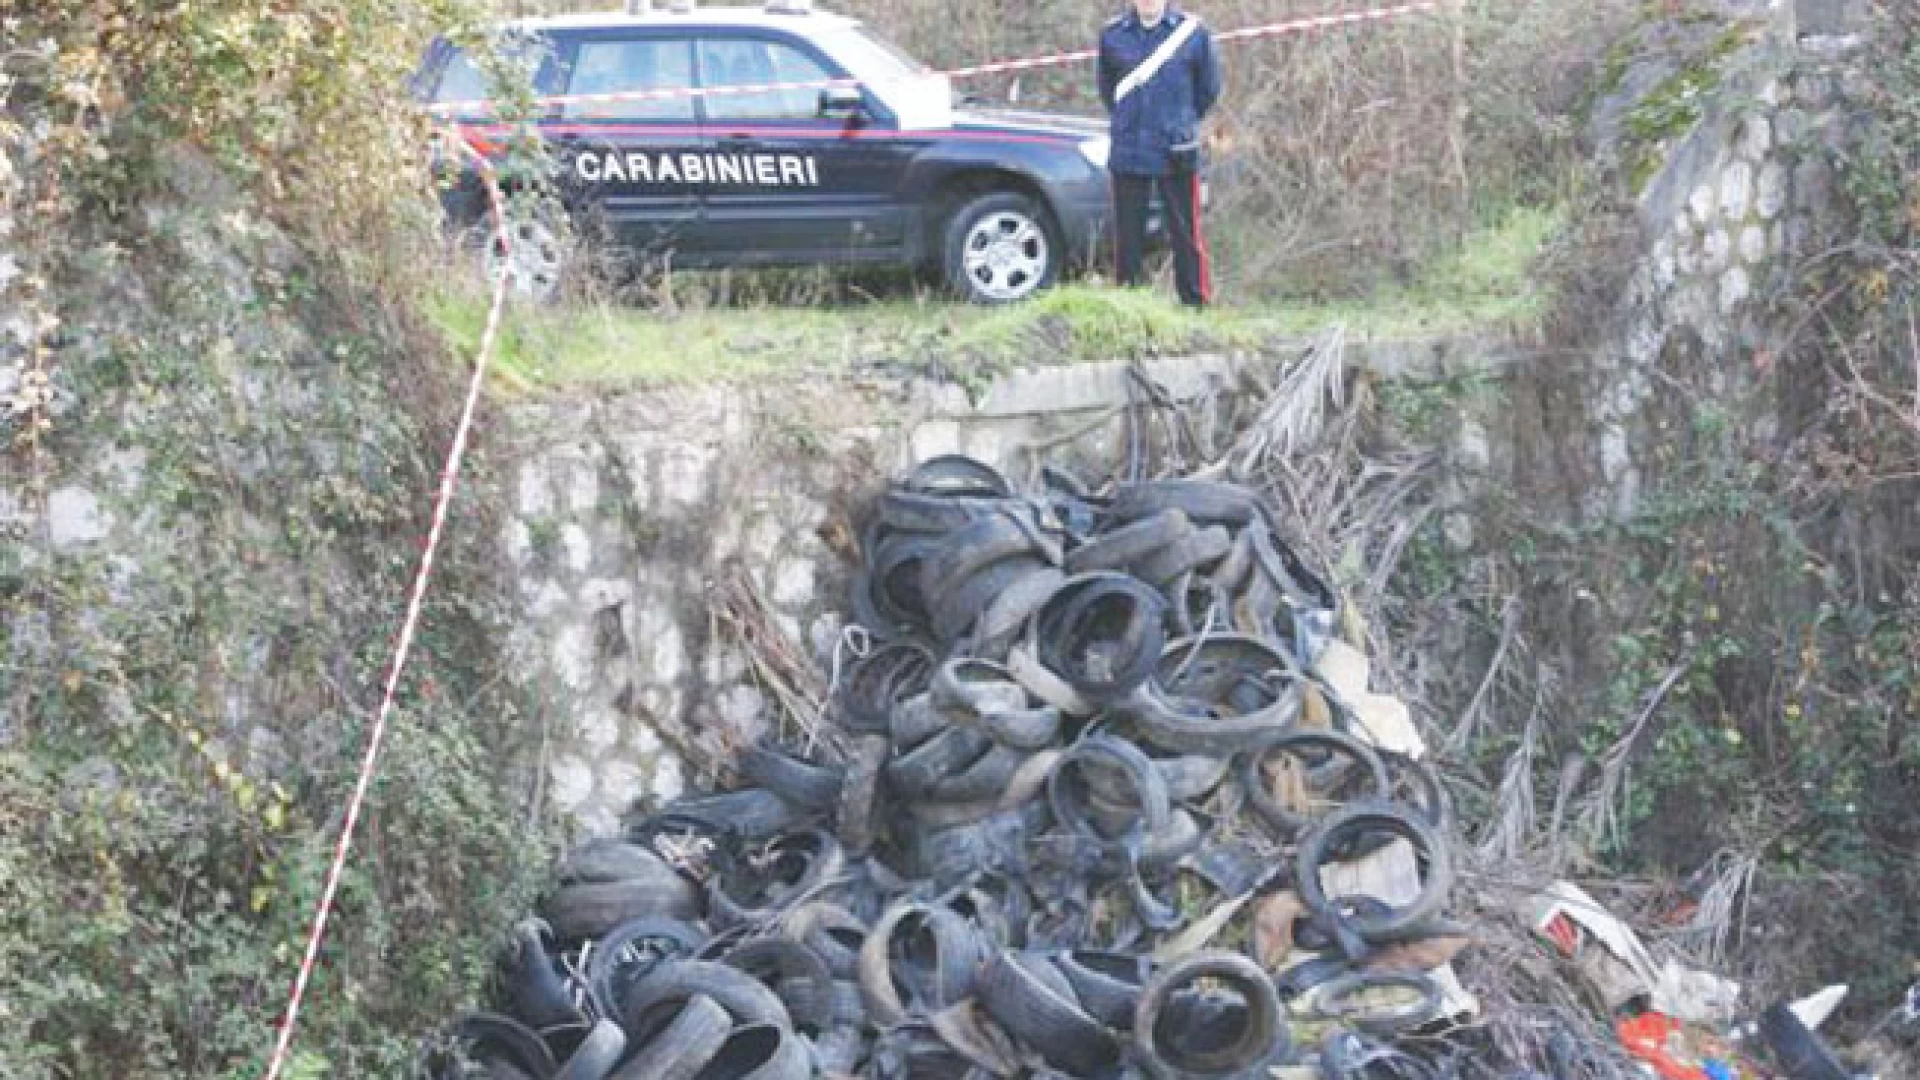 Venafro: Smaltimento illecito di rifiuti, pregiudicato denunciato dai Carabinieri.